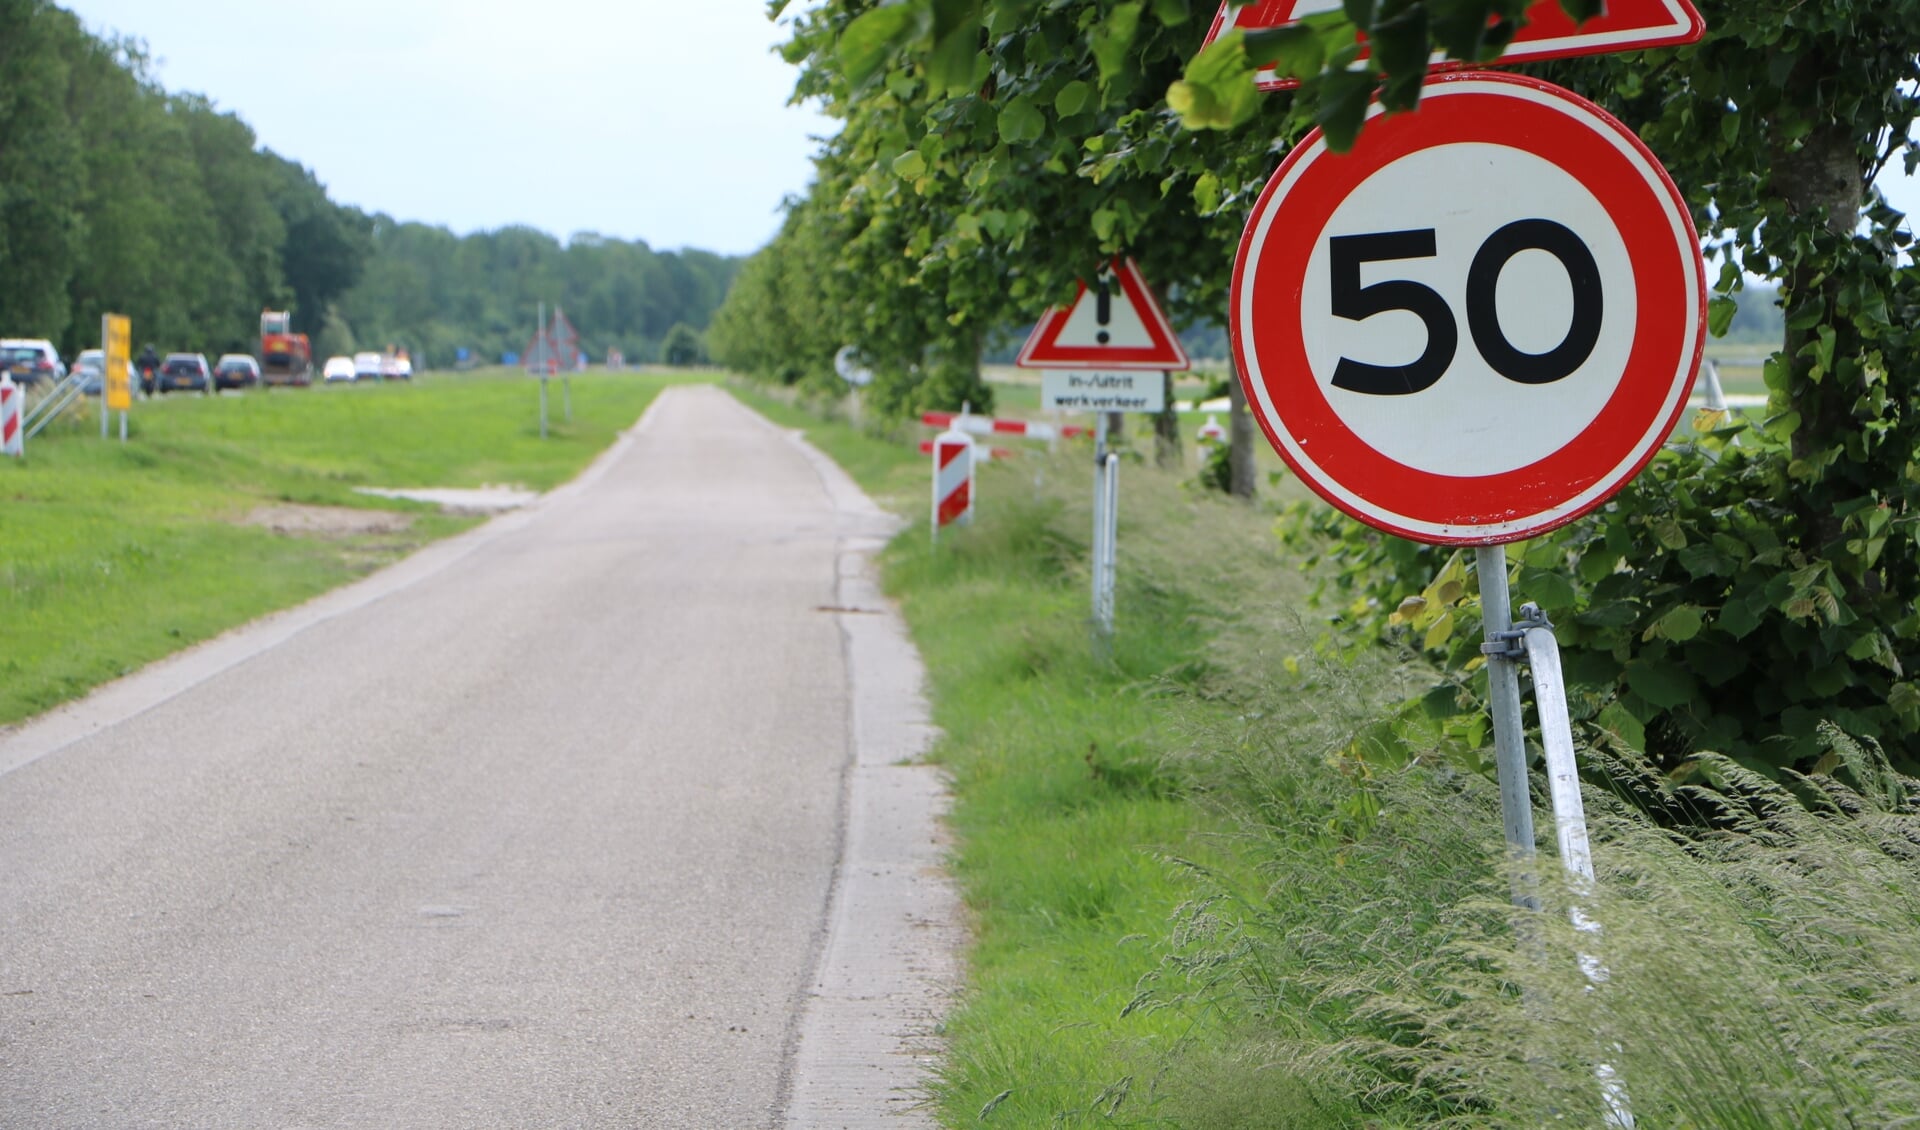 Onder meer langs de Biddingringweg en de Oldebroekerweg gelden snelheidsbeperkingen en wordt verkeer gewaarschuwd voor het oprijdende werkverkeer.